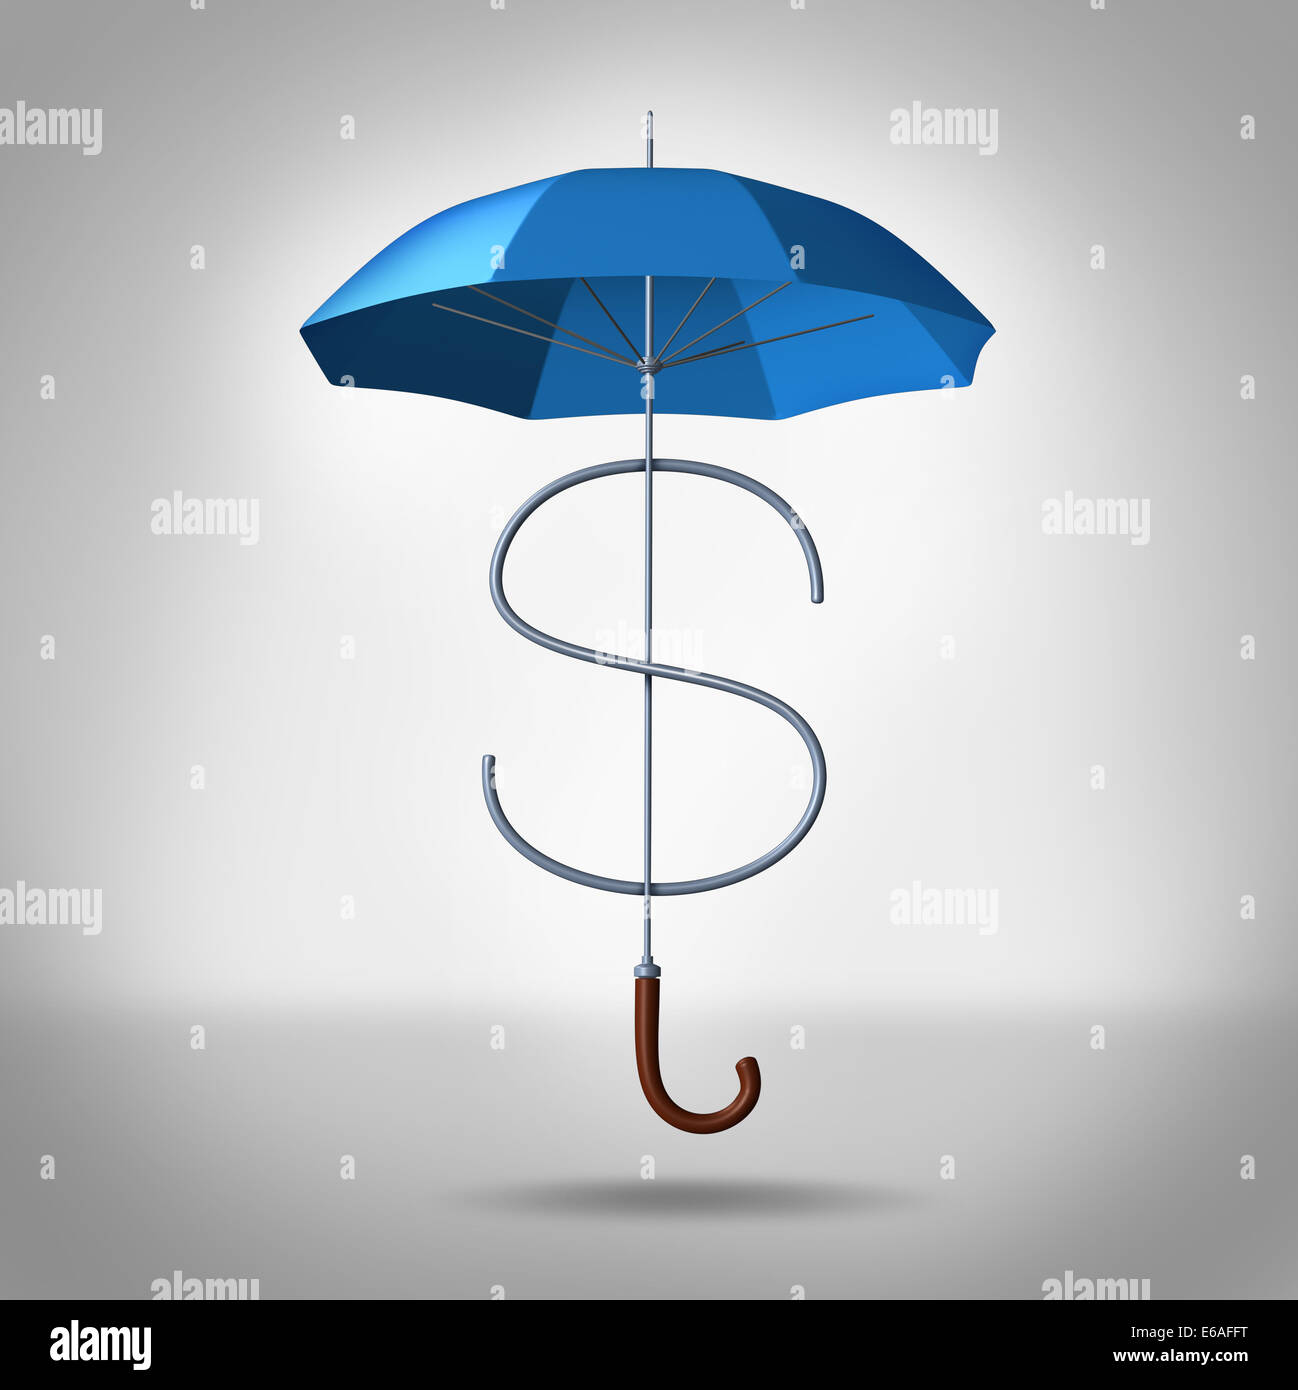 El Tax Shelter y los costos de la seguridad financiera y empresarial como un concepto tridimensional en forma de paraguas como un símbolo de dólar como un icono para protección de financiar los gastos y la protección contra las tasas. Foto de stock